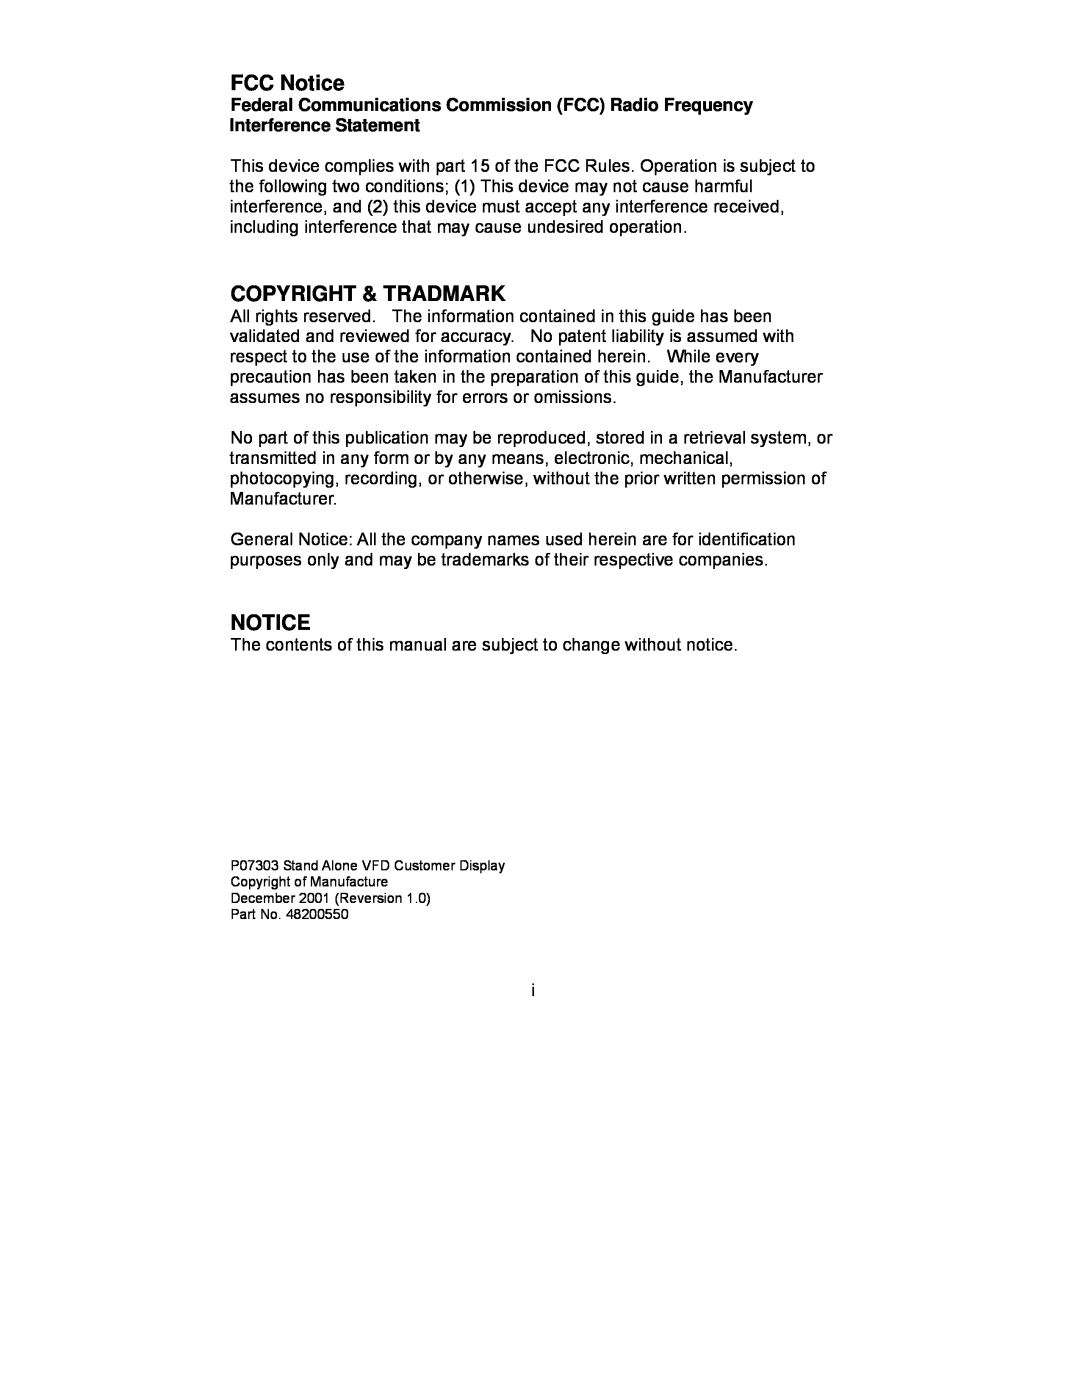 Epson P07303 user manual FCC Notice, Copyright & Tradmark 